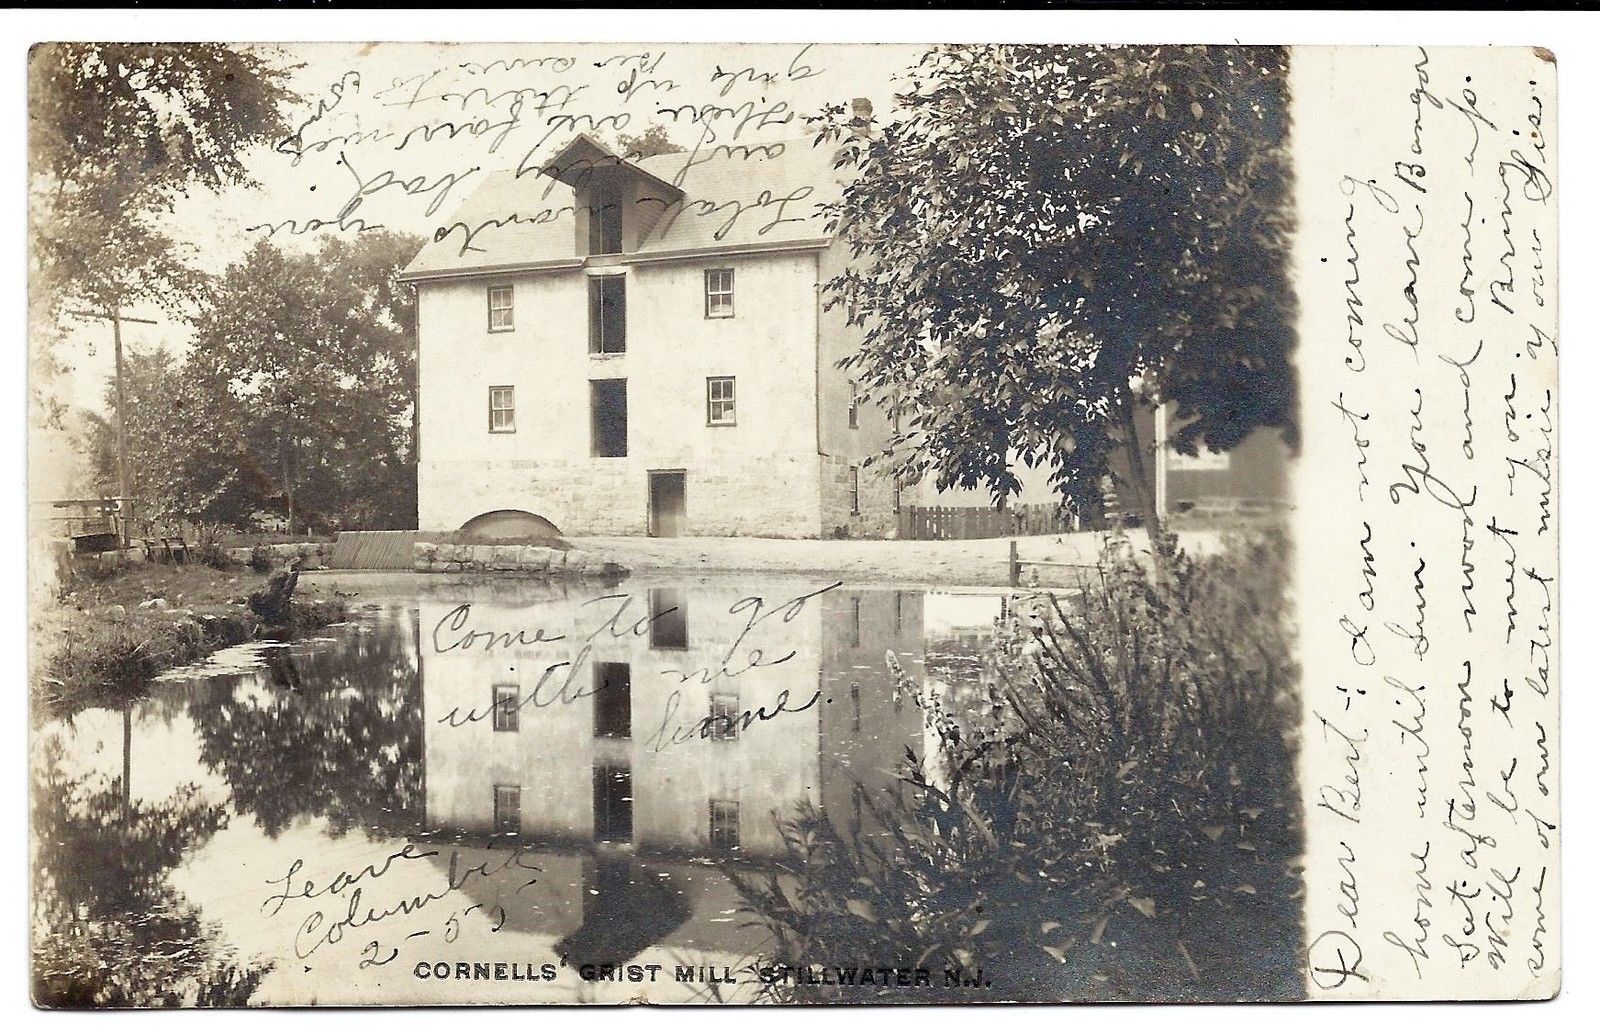 Stillwater - Cornells Grist Mill - c 1910